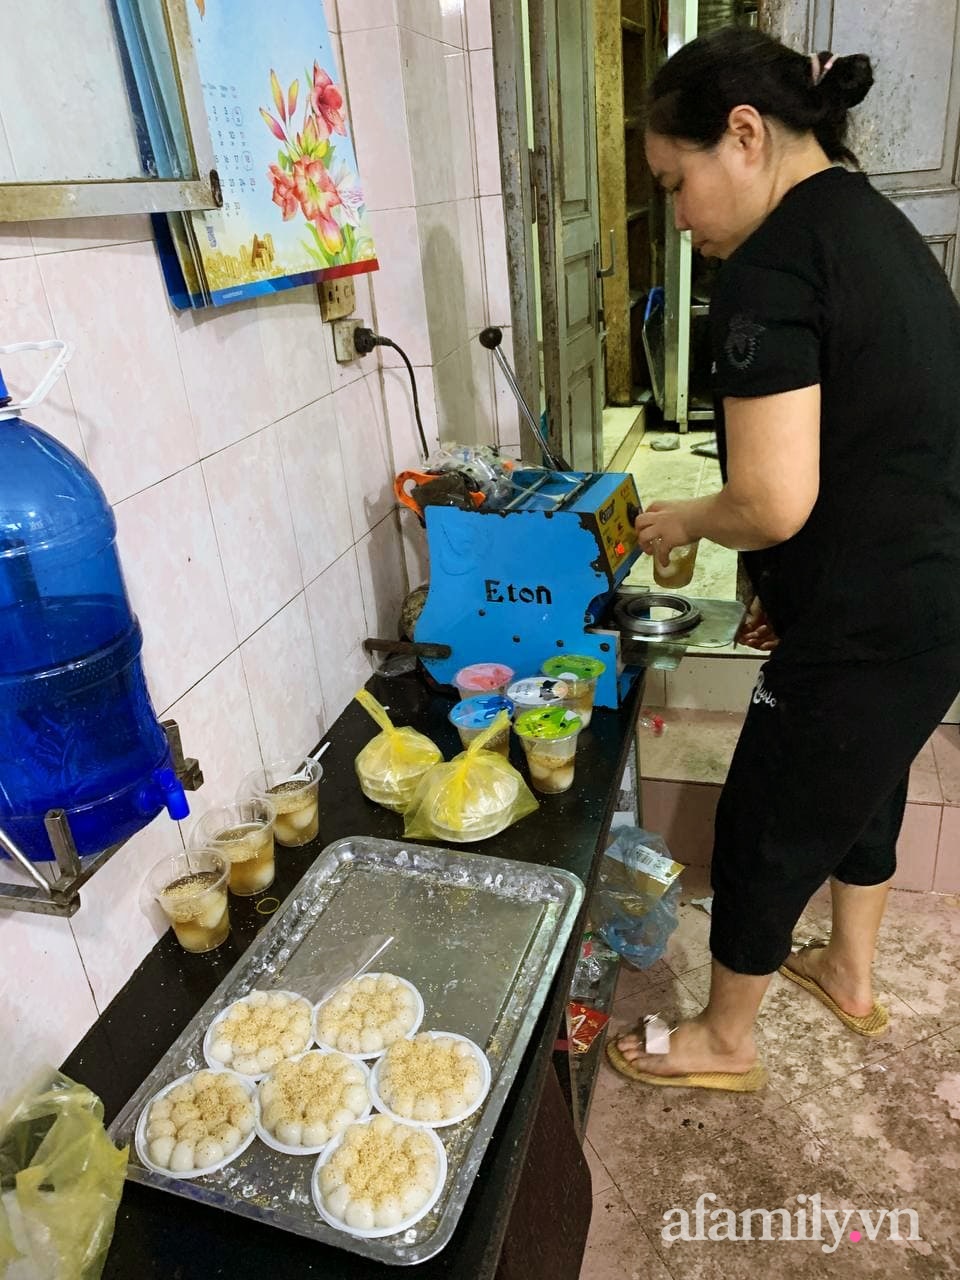 Tết Hàn thực: Ngay từ sớm dân Hà Nội đã nhộn nhịp xếp hàng đi chợ mua bánh trôi bánh chay, sắm đồ cúng lễ - Ảnh 11.